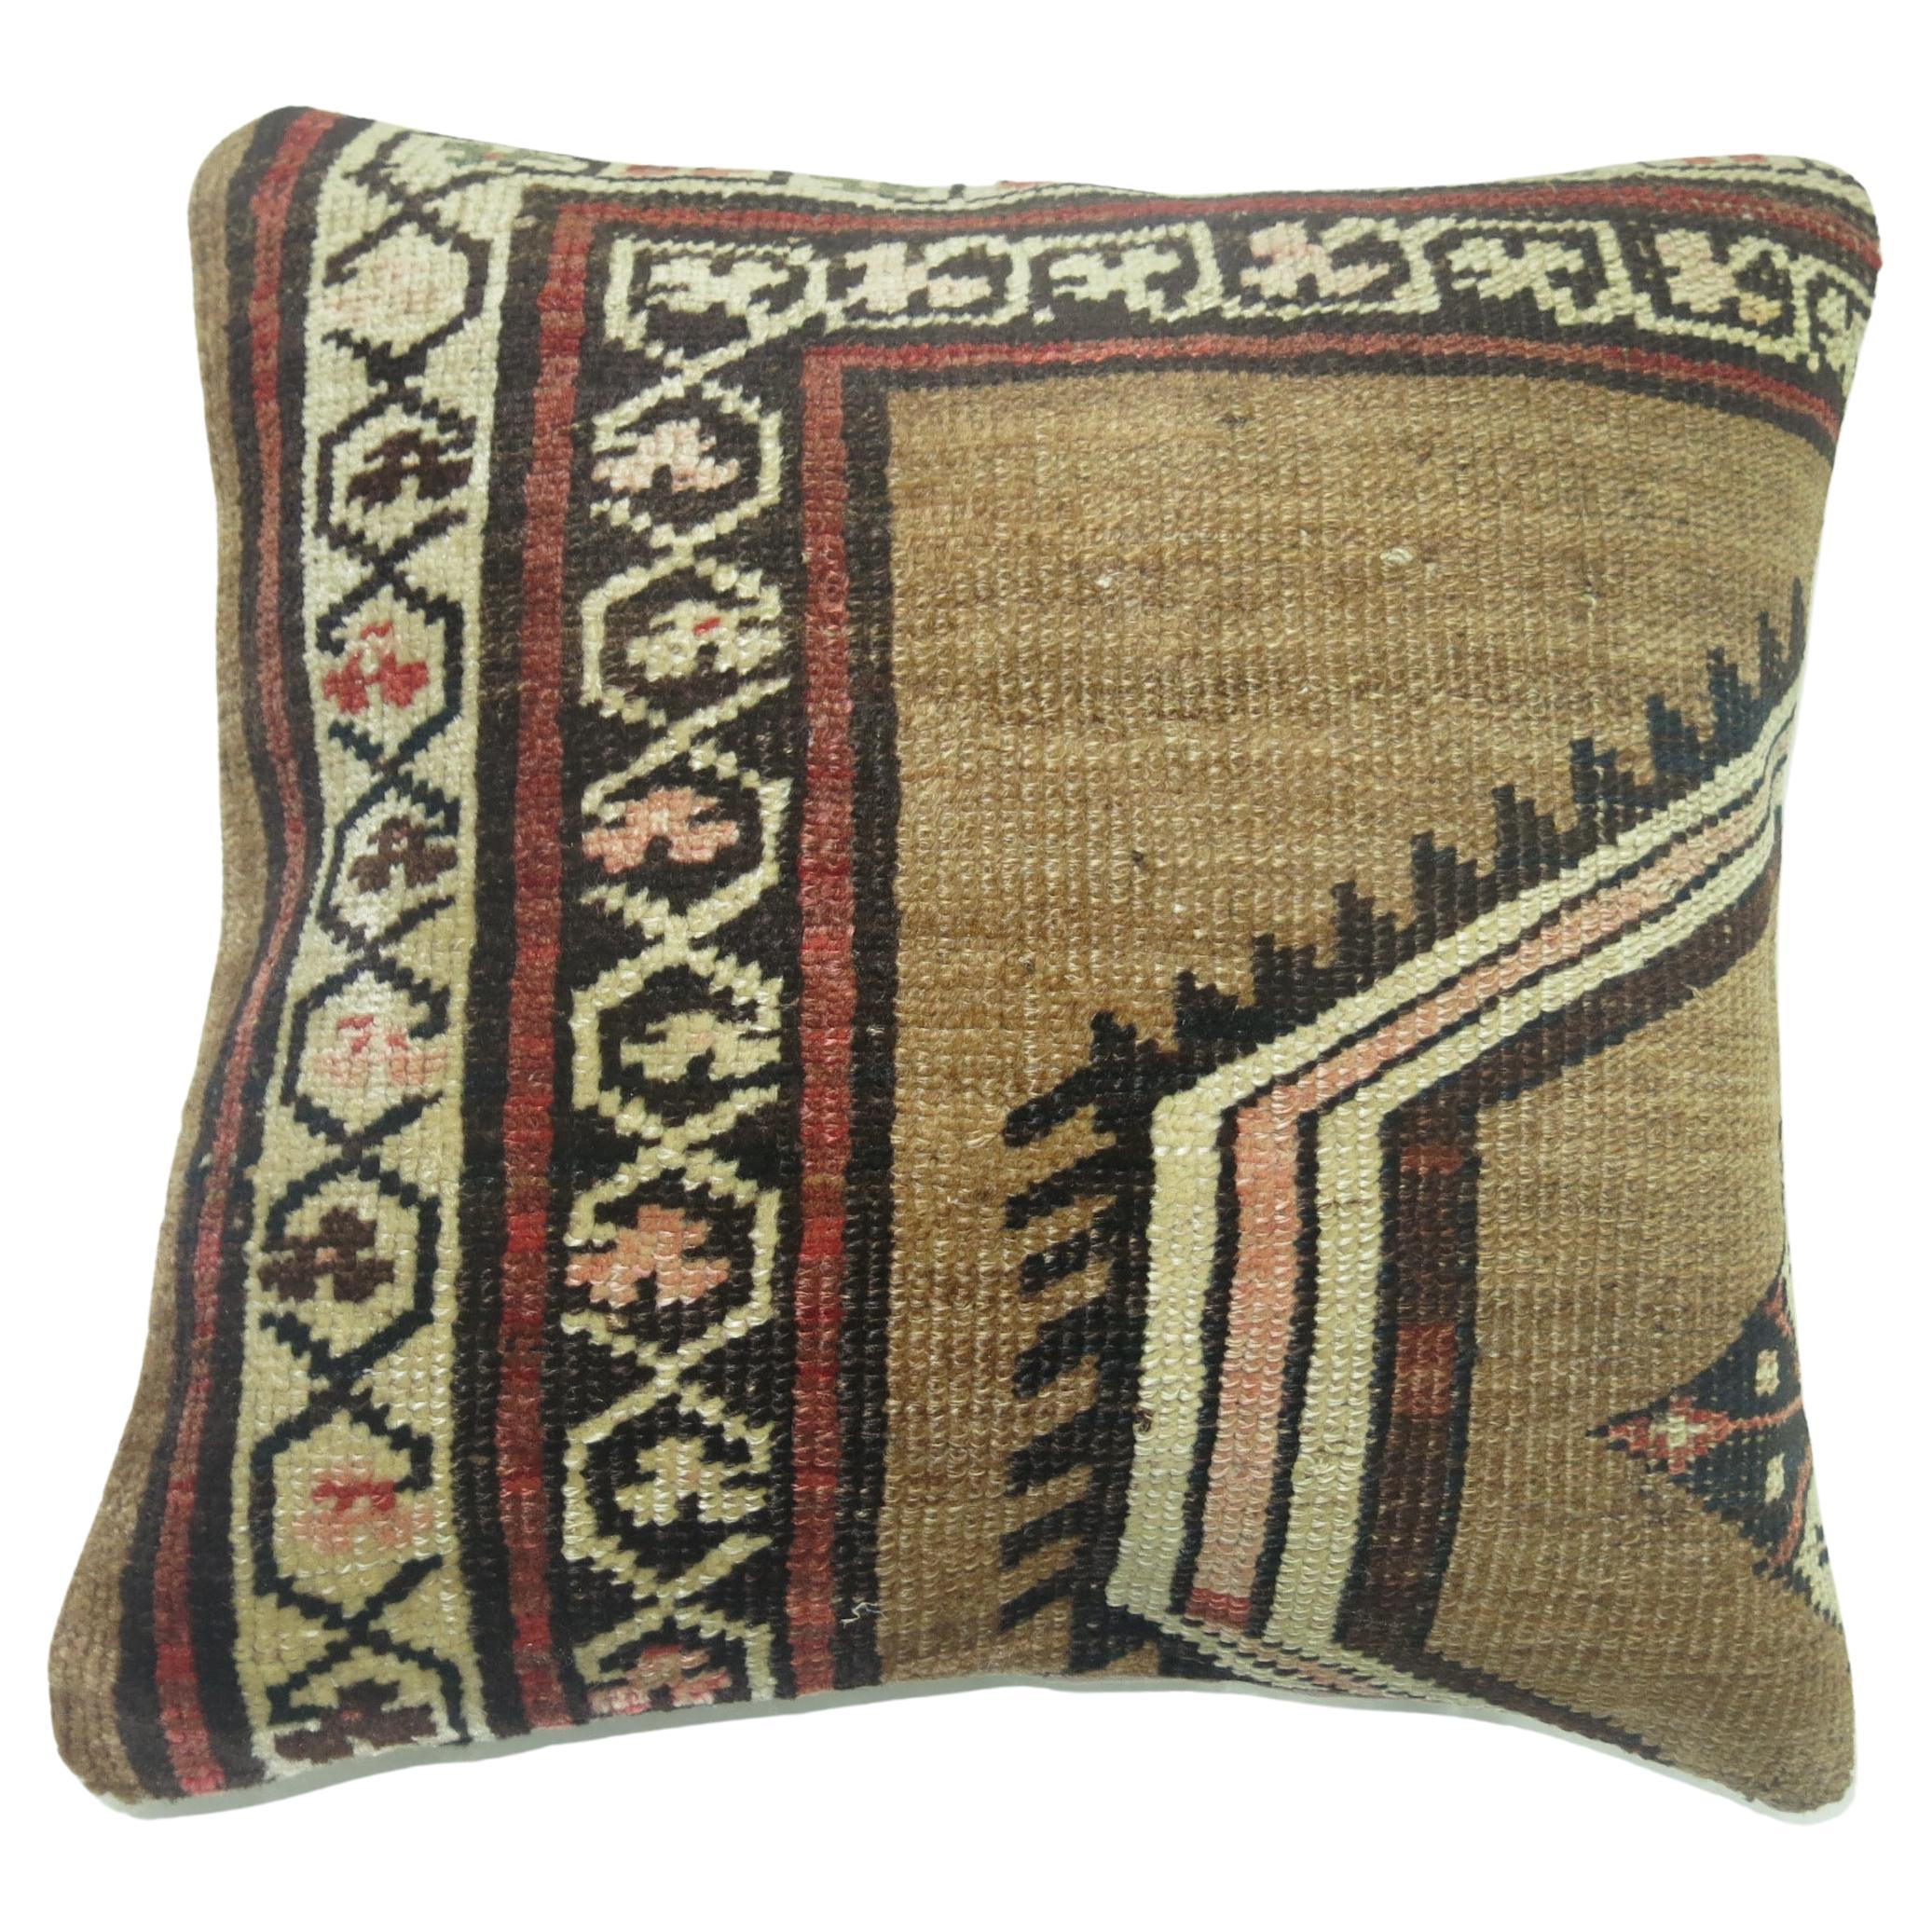 Kissen aus einem persischen Bakshaish-Teppich aus dem frühen 20. Jahrhundert. 
Maße: 17